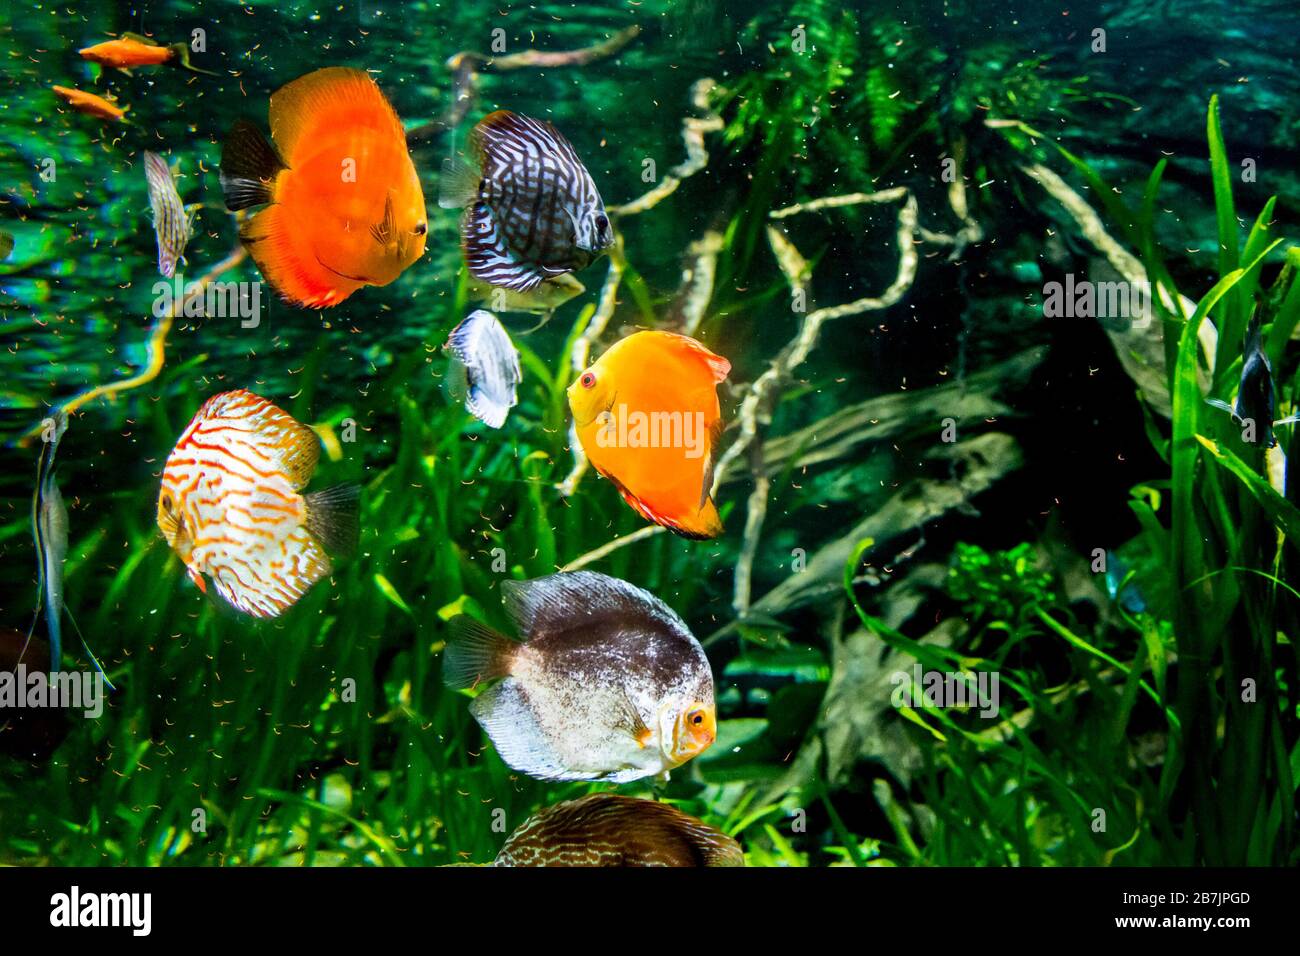 Discus fish in aquarium, Stock Photo